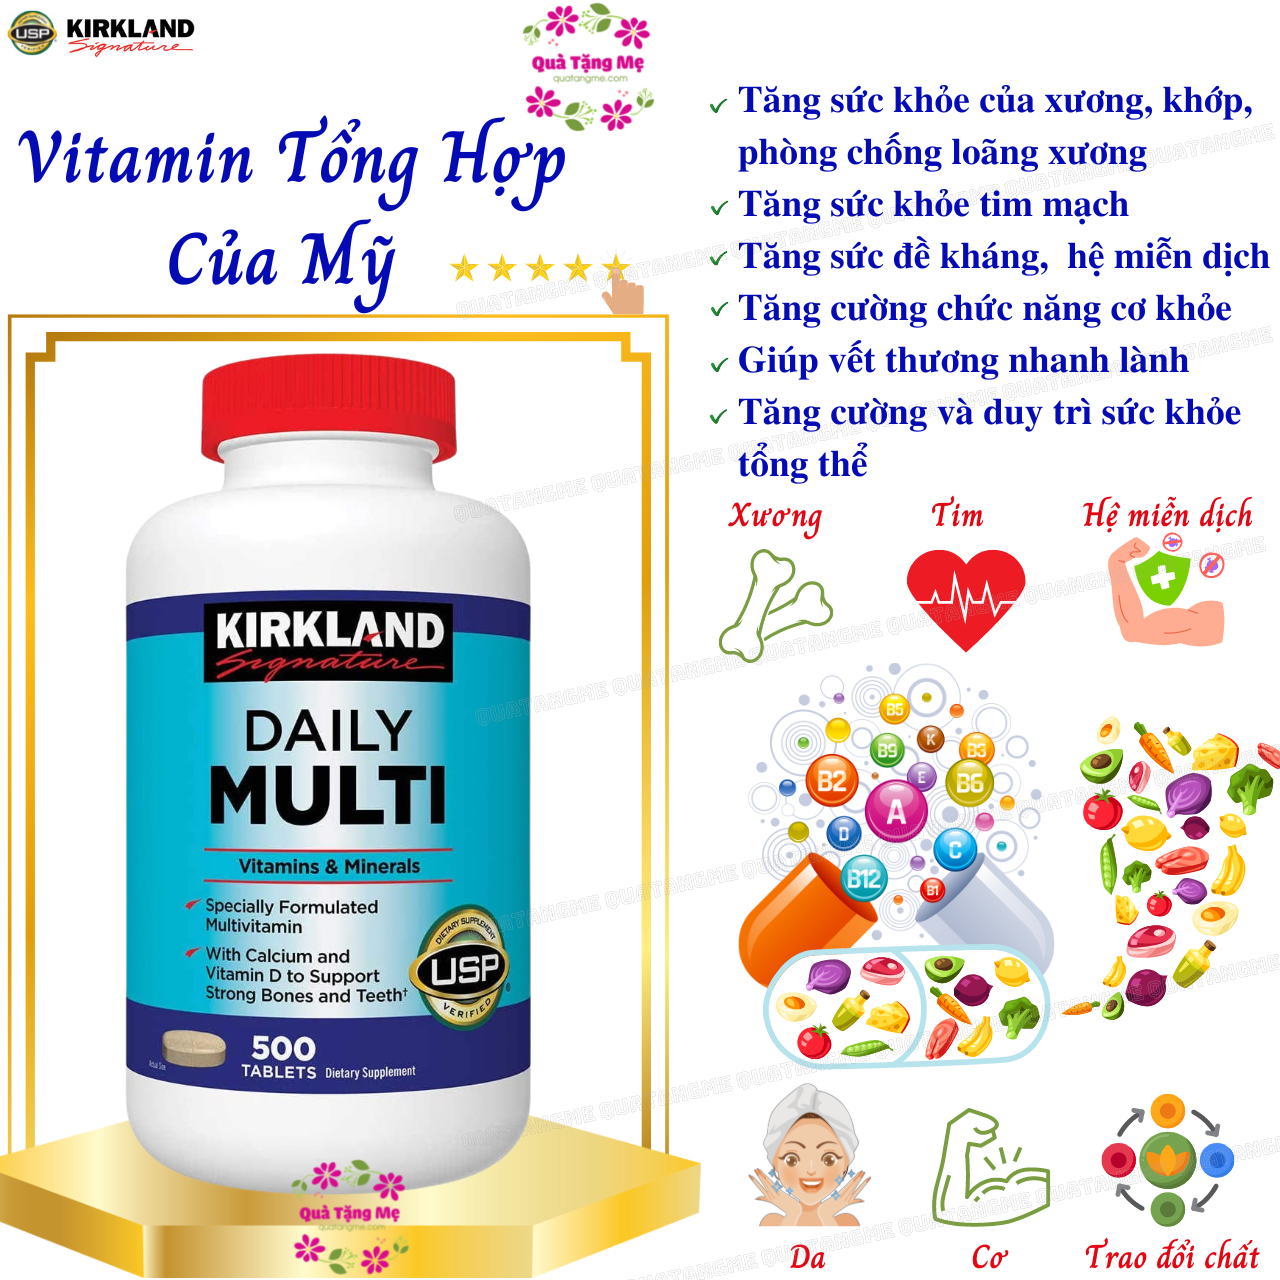 Vitamin Tổng Hợp Multivitamin Kirkland 500 Viên cho người dưới 50 tuổi, bổ sung vitamin khoáng chất cho cả nam va nữ, tăng cường hệ miễn dịch, sáng mắt, giảm căng thẳng mệt mỏi